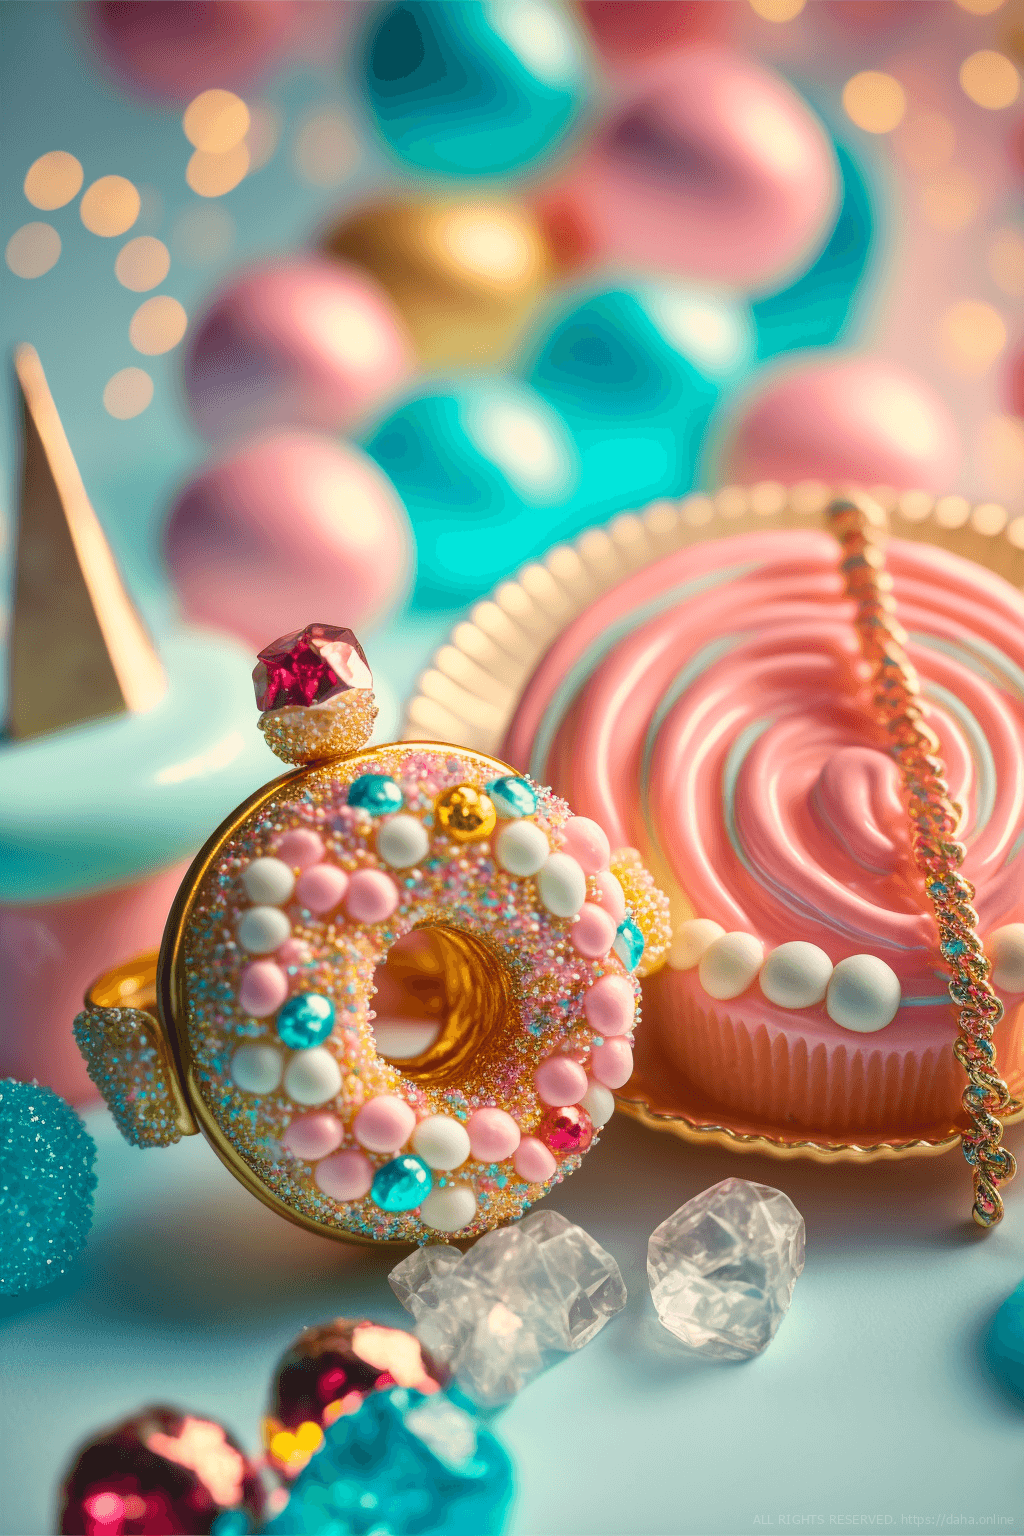 ドーナツモチーフのアクセサリーの壁紙イラスト ゆめかわいいドーナツ型雑貨のイラスト待受 AIイラスト待受 縦長画像 cute pop donuts accessory fiction art sugar donuts charm